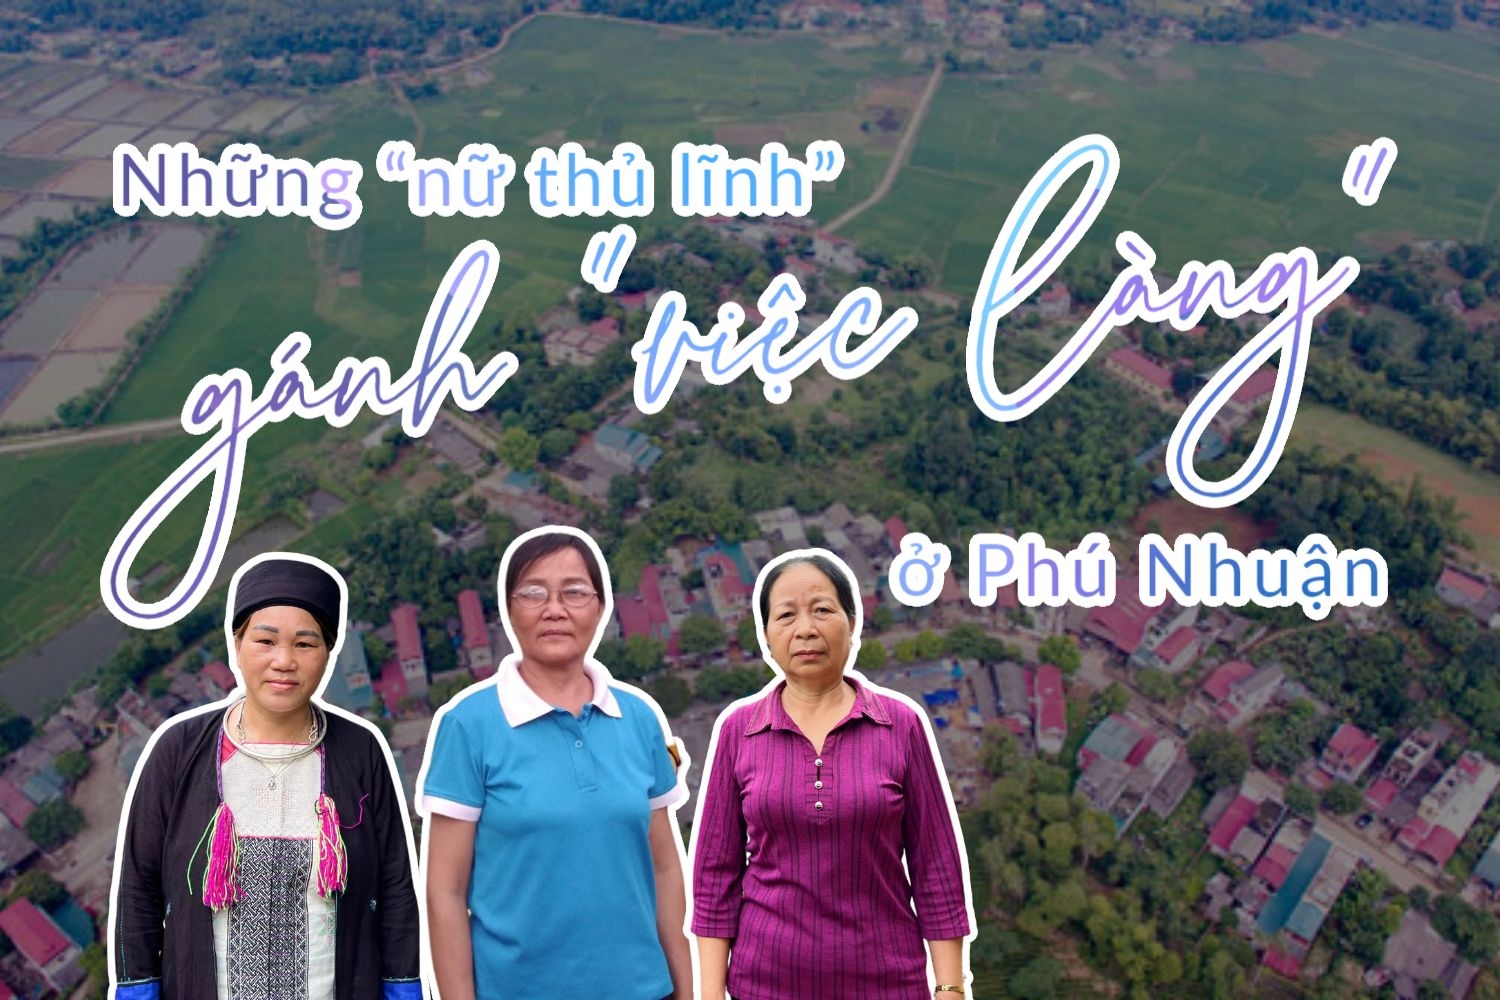 Những “nữ thủ lĩnh” gánh “việc làng” ở Phú Nhuận